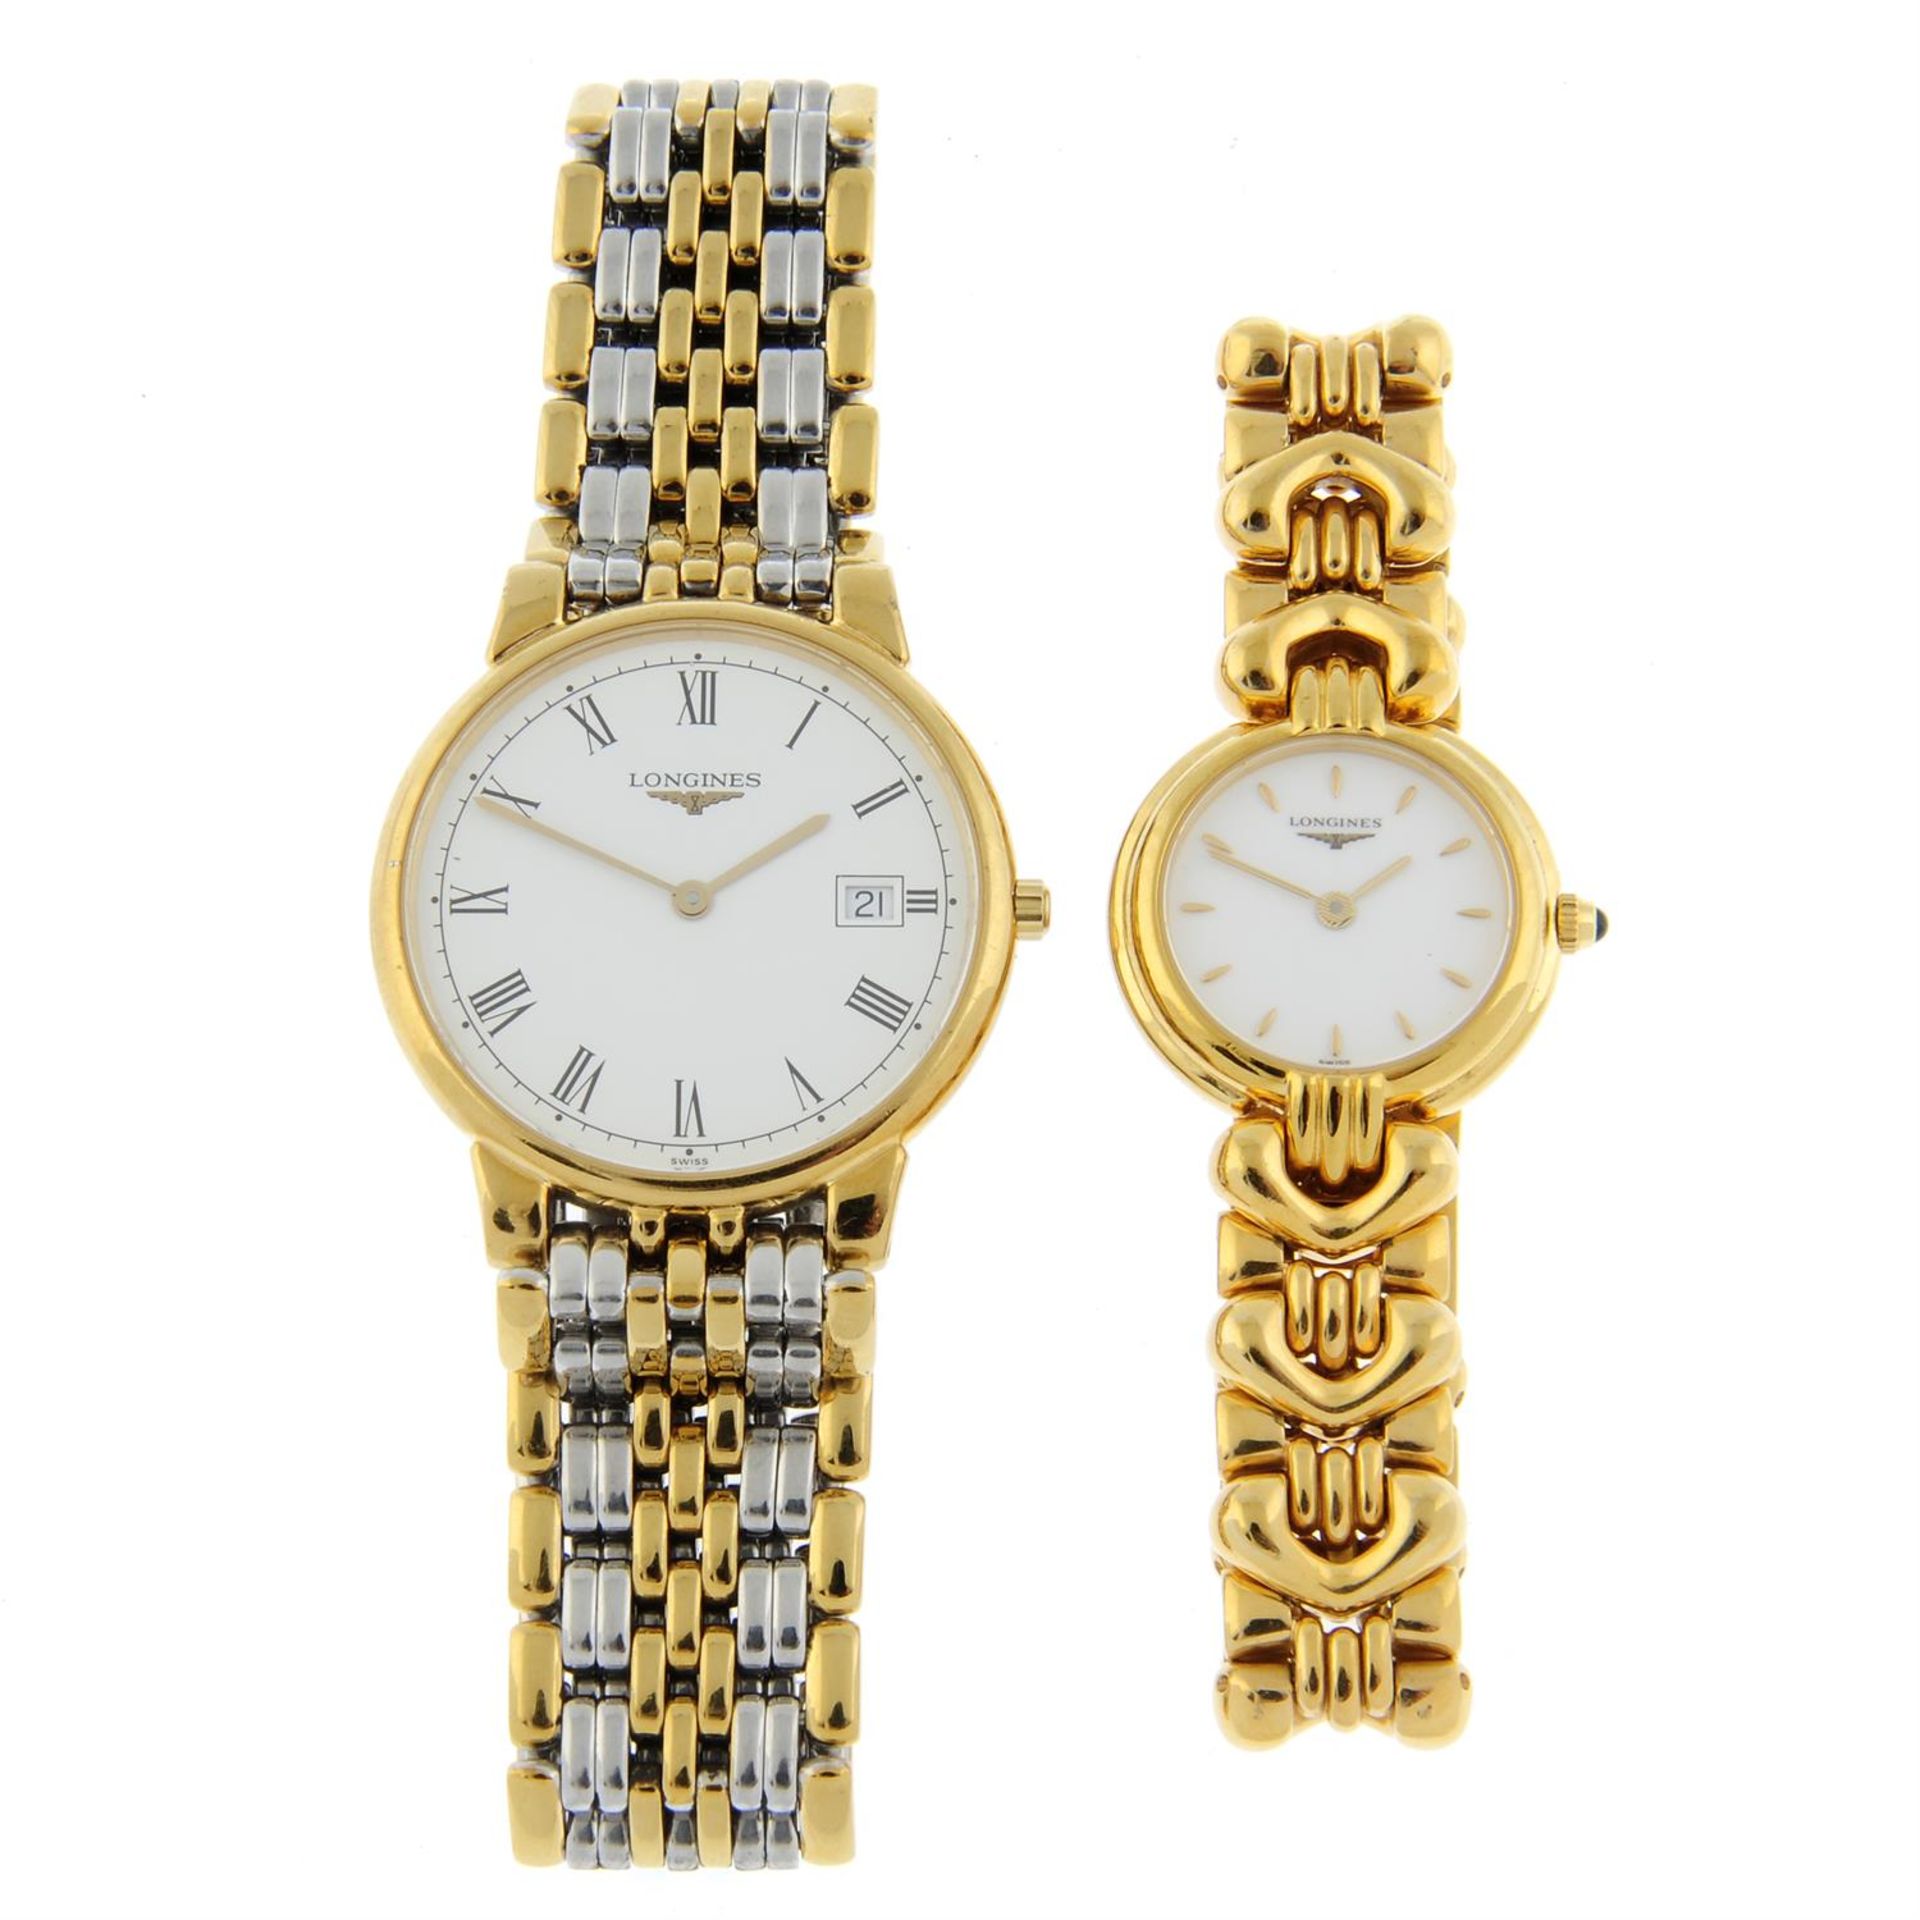 LONGINES - a bi-colour Les Grandes Classiques bracelet watch (33mm) with a gold plated Longines